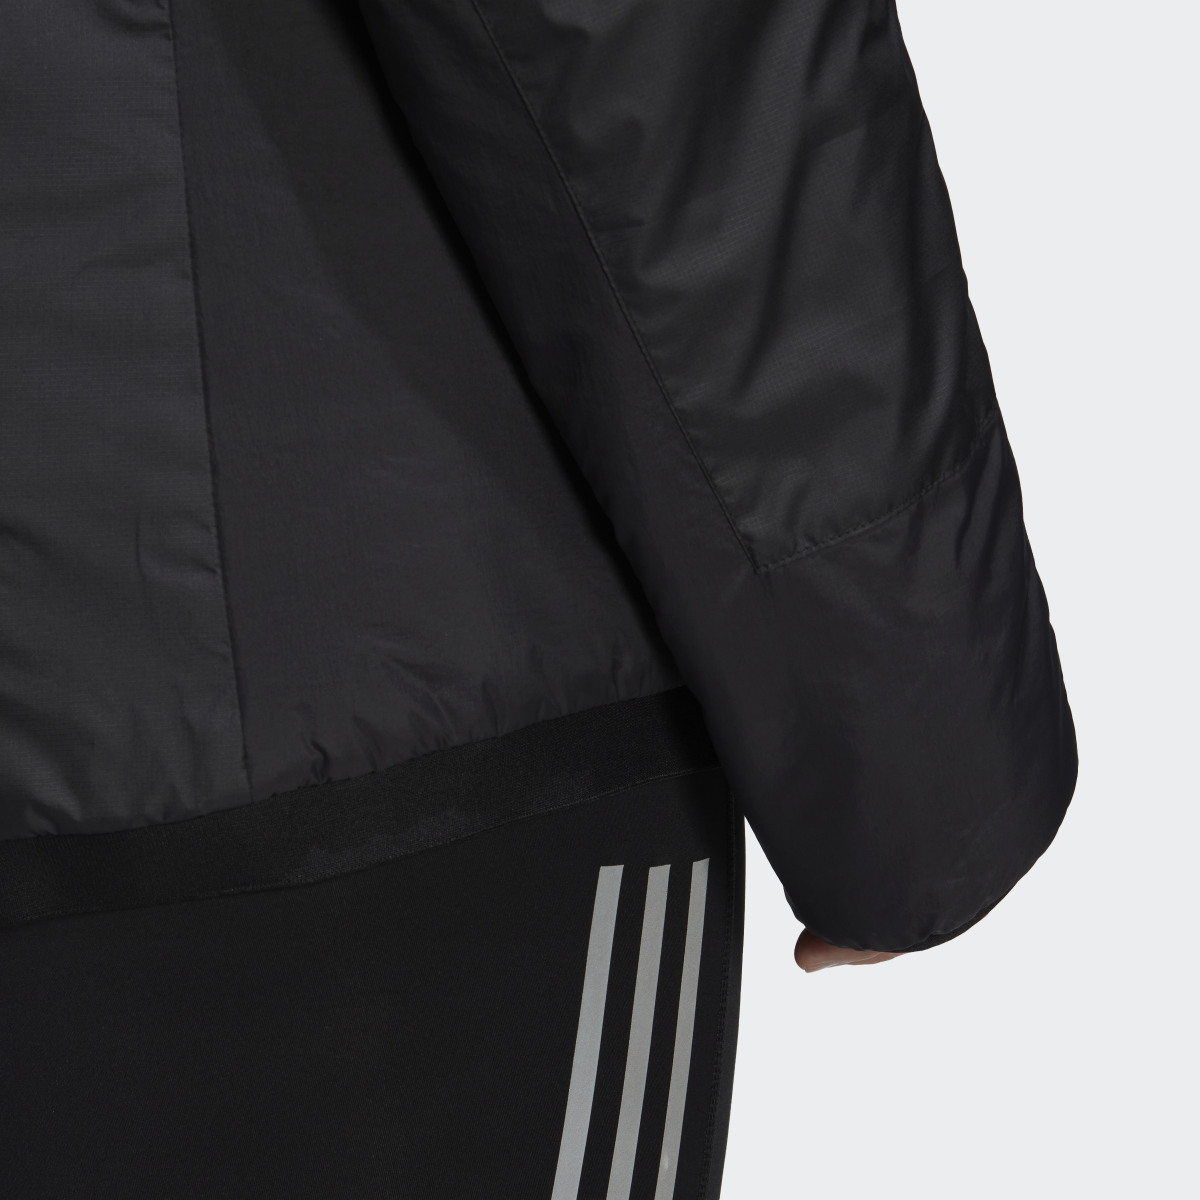 Adidas TERREX Multi Insulated Jacke – Große Größen. 7